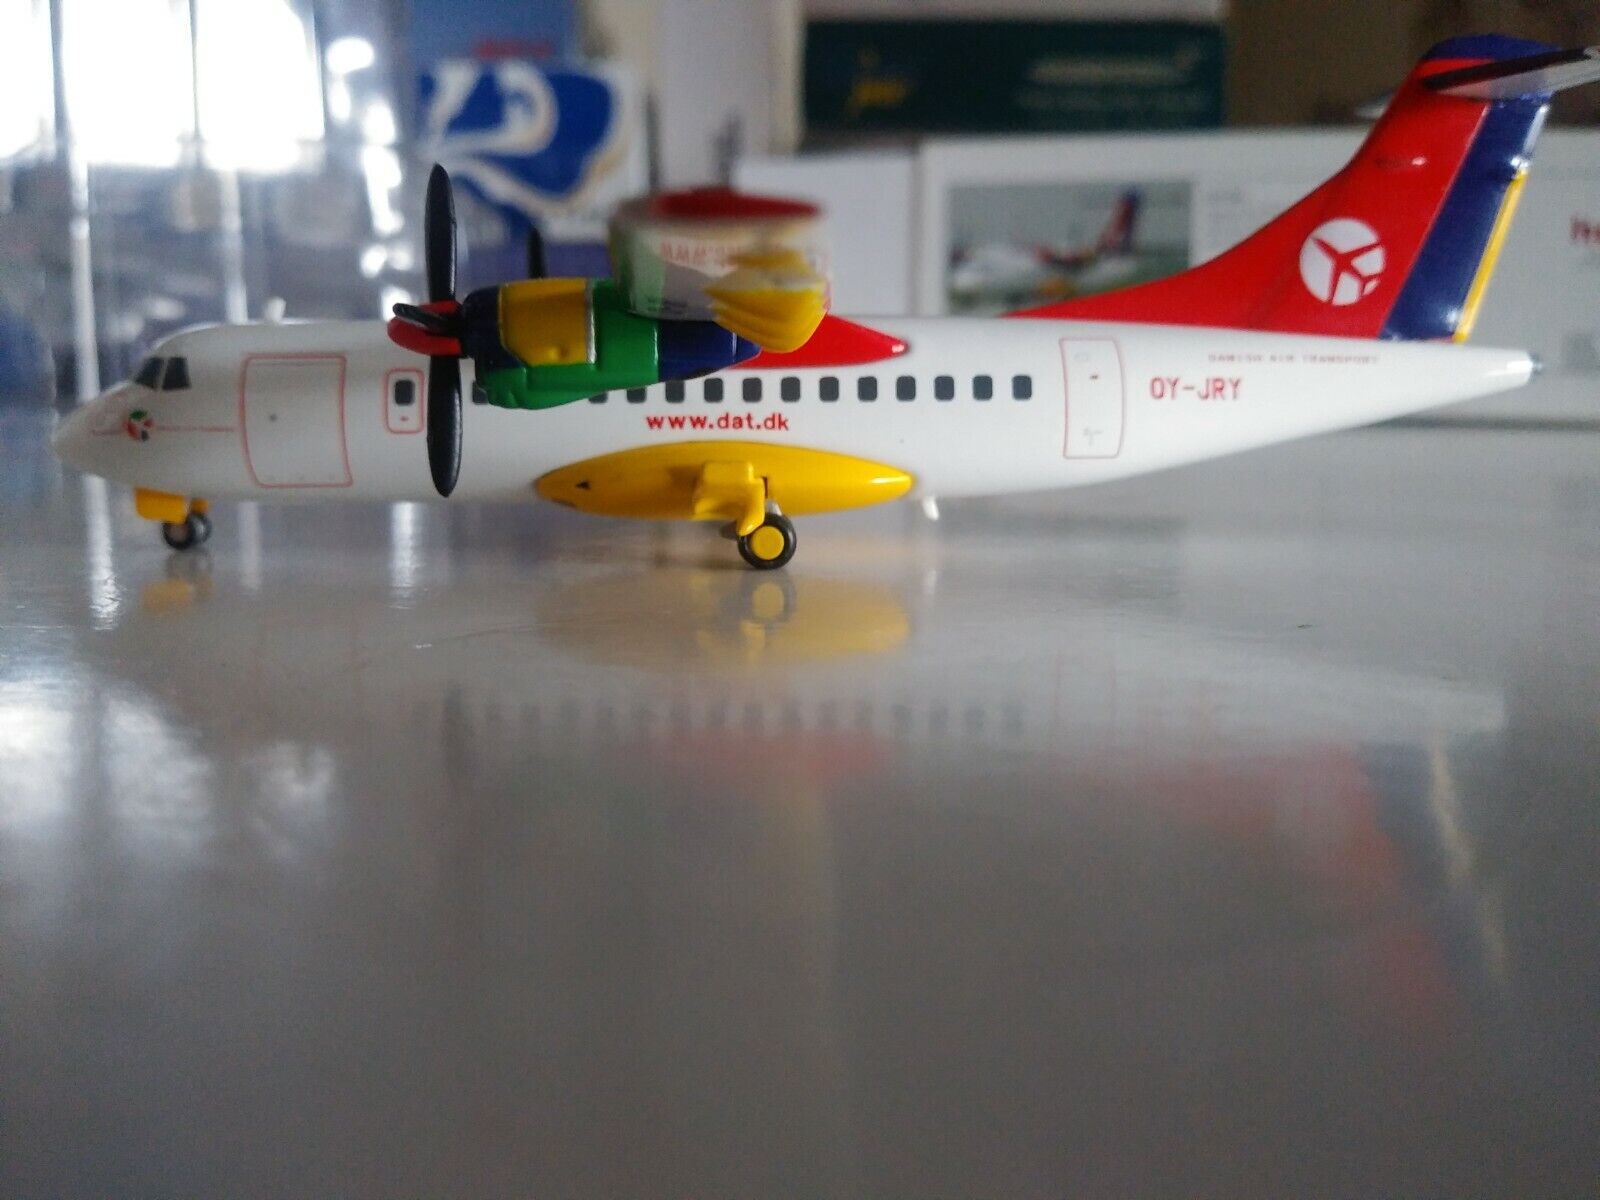 Herpa DAT Danish Air Transport Aerospatiale ATR-42 1:200 OY-JRY 551045 RARE